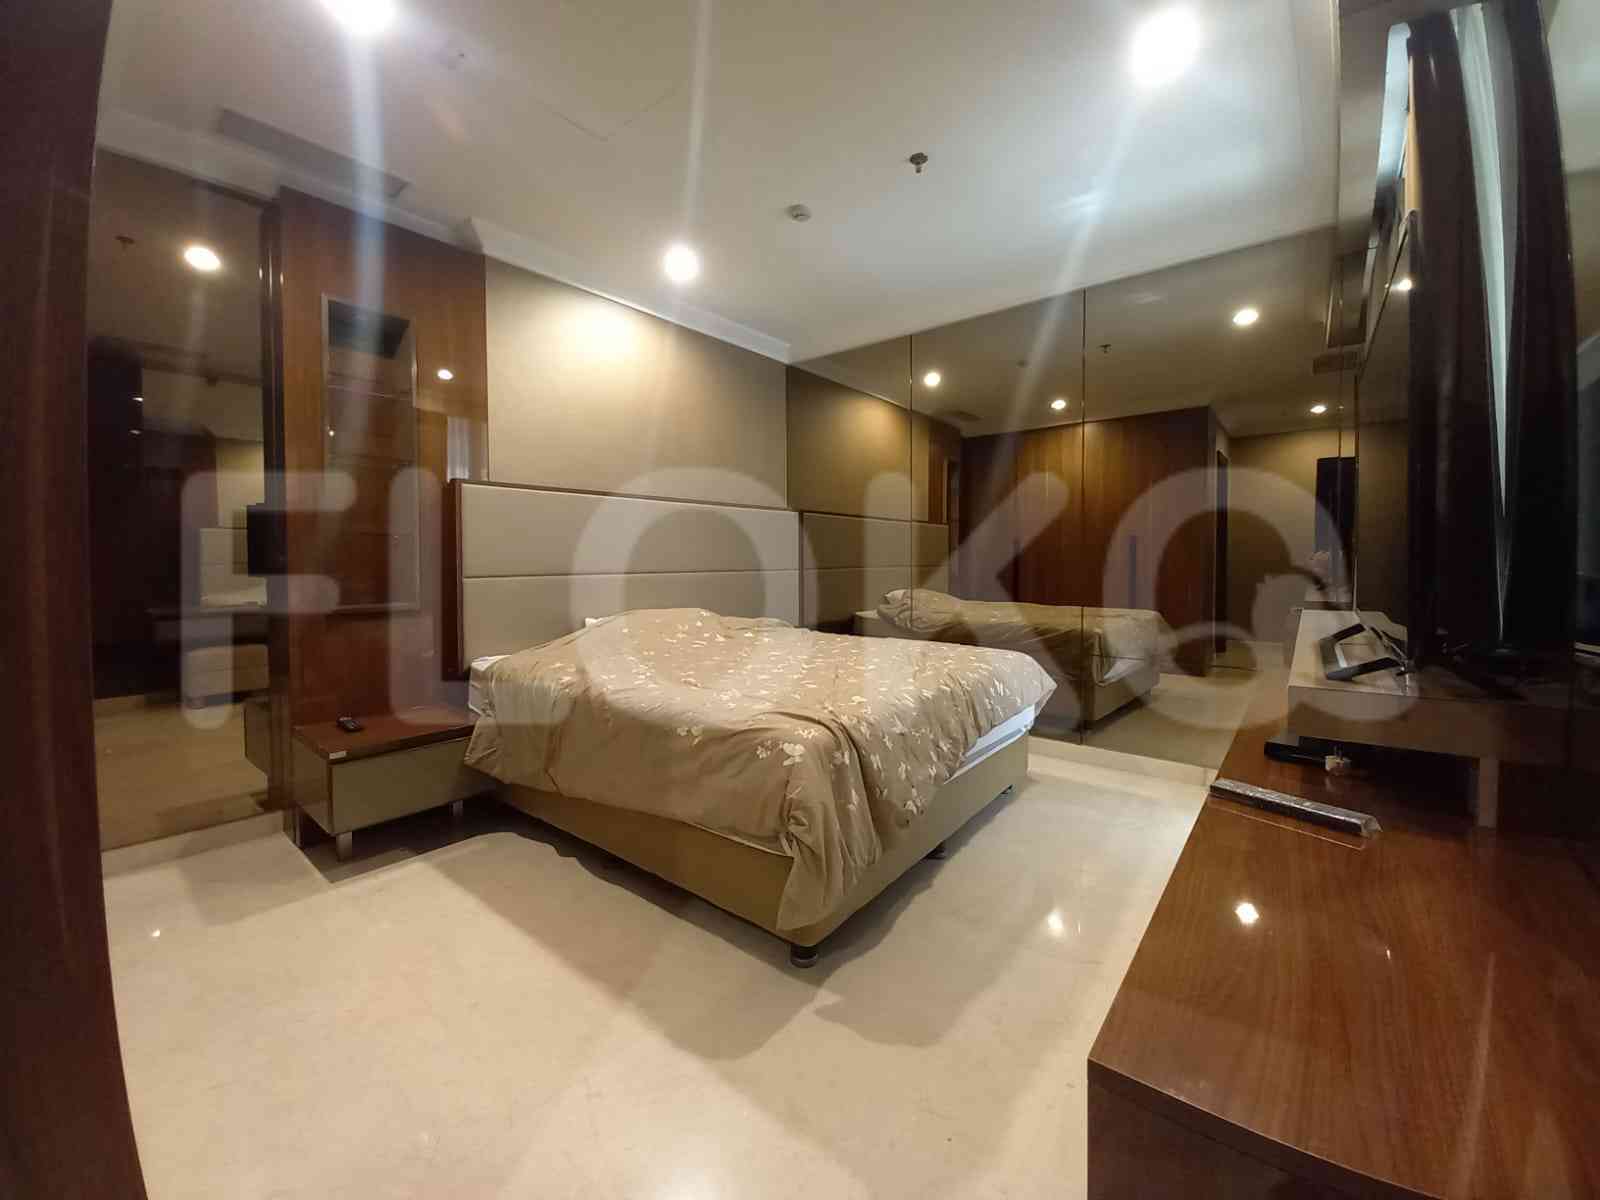 3 Bedroom on 8th Floor for Rent in Pondok Indah Residence - fpo70b 4